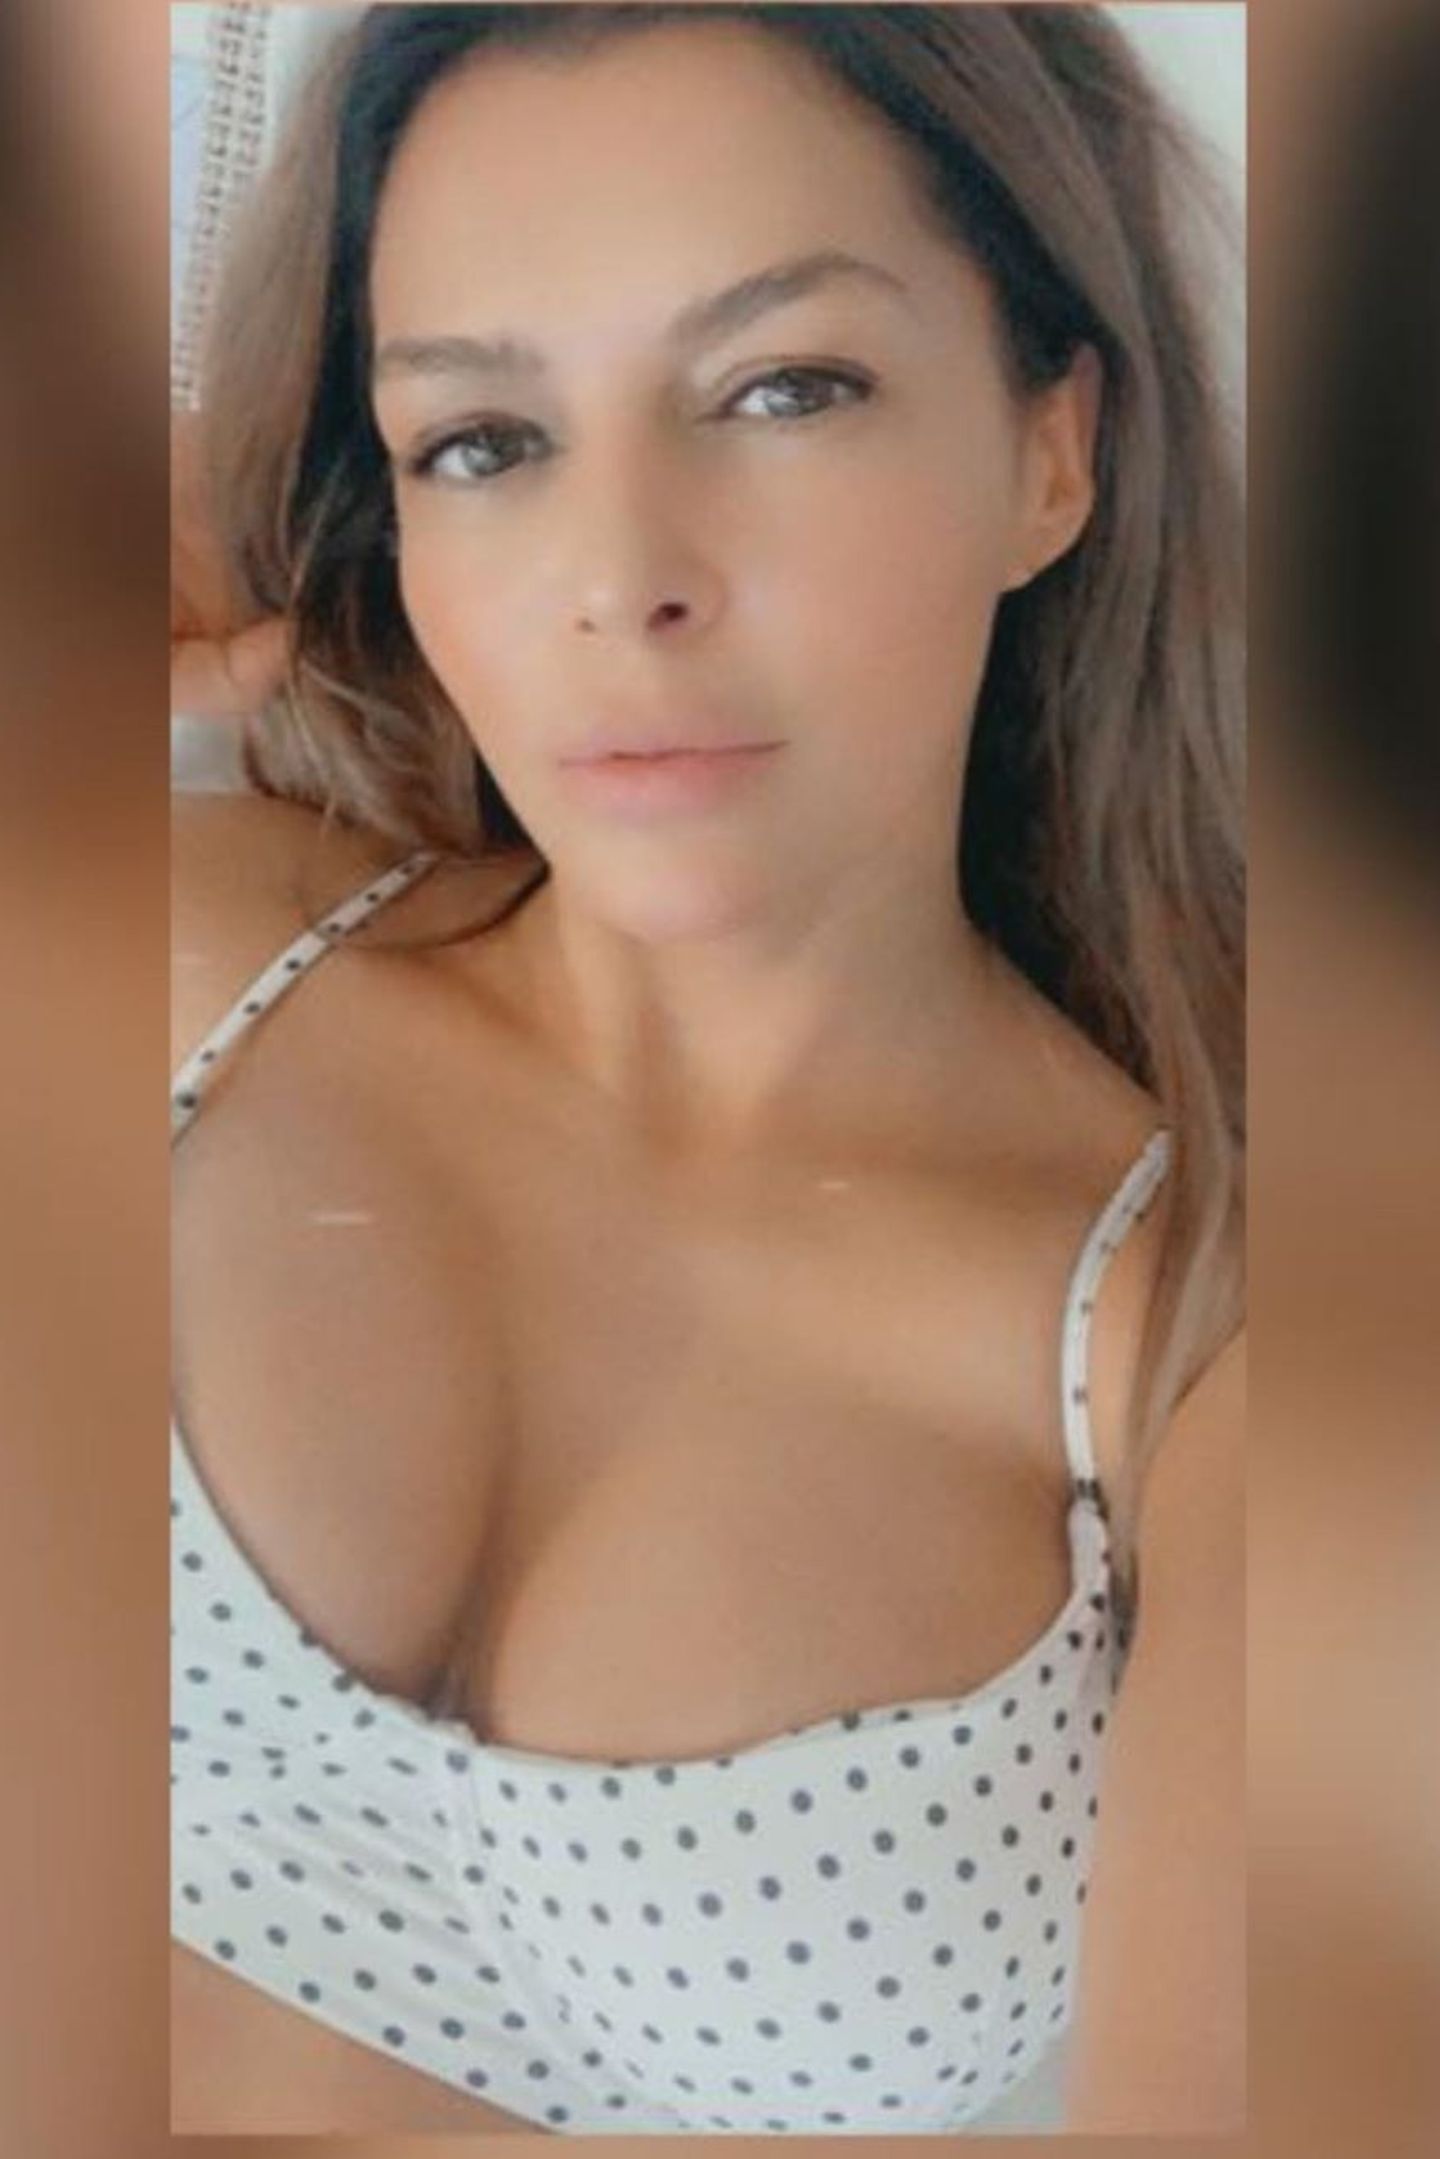 Um Sabia Boulahrouz wurde es seit September 2019 still in den sozialen Medien. Jetzt ist es endlich wieder soweit, die Ex von Rafael van der Vaart meldet sich auf Instagram zurück. Was für ein Comeback - mit tiefem Ausschnitt und laszivem Blick scheint es fast so, als wollte sie mit dem Bild einer gewissen Person imponieren. 